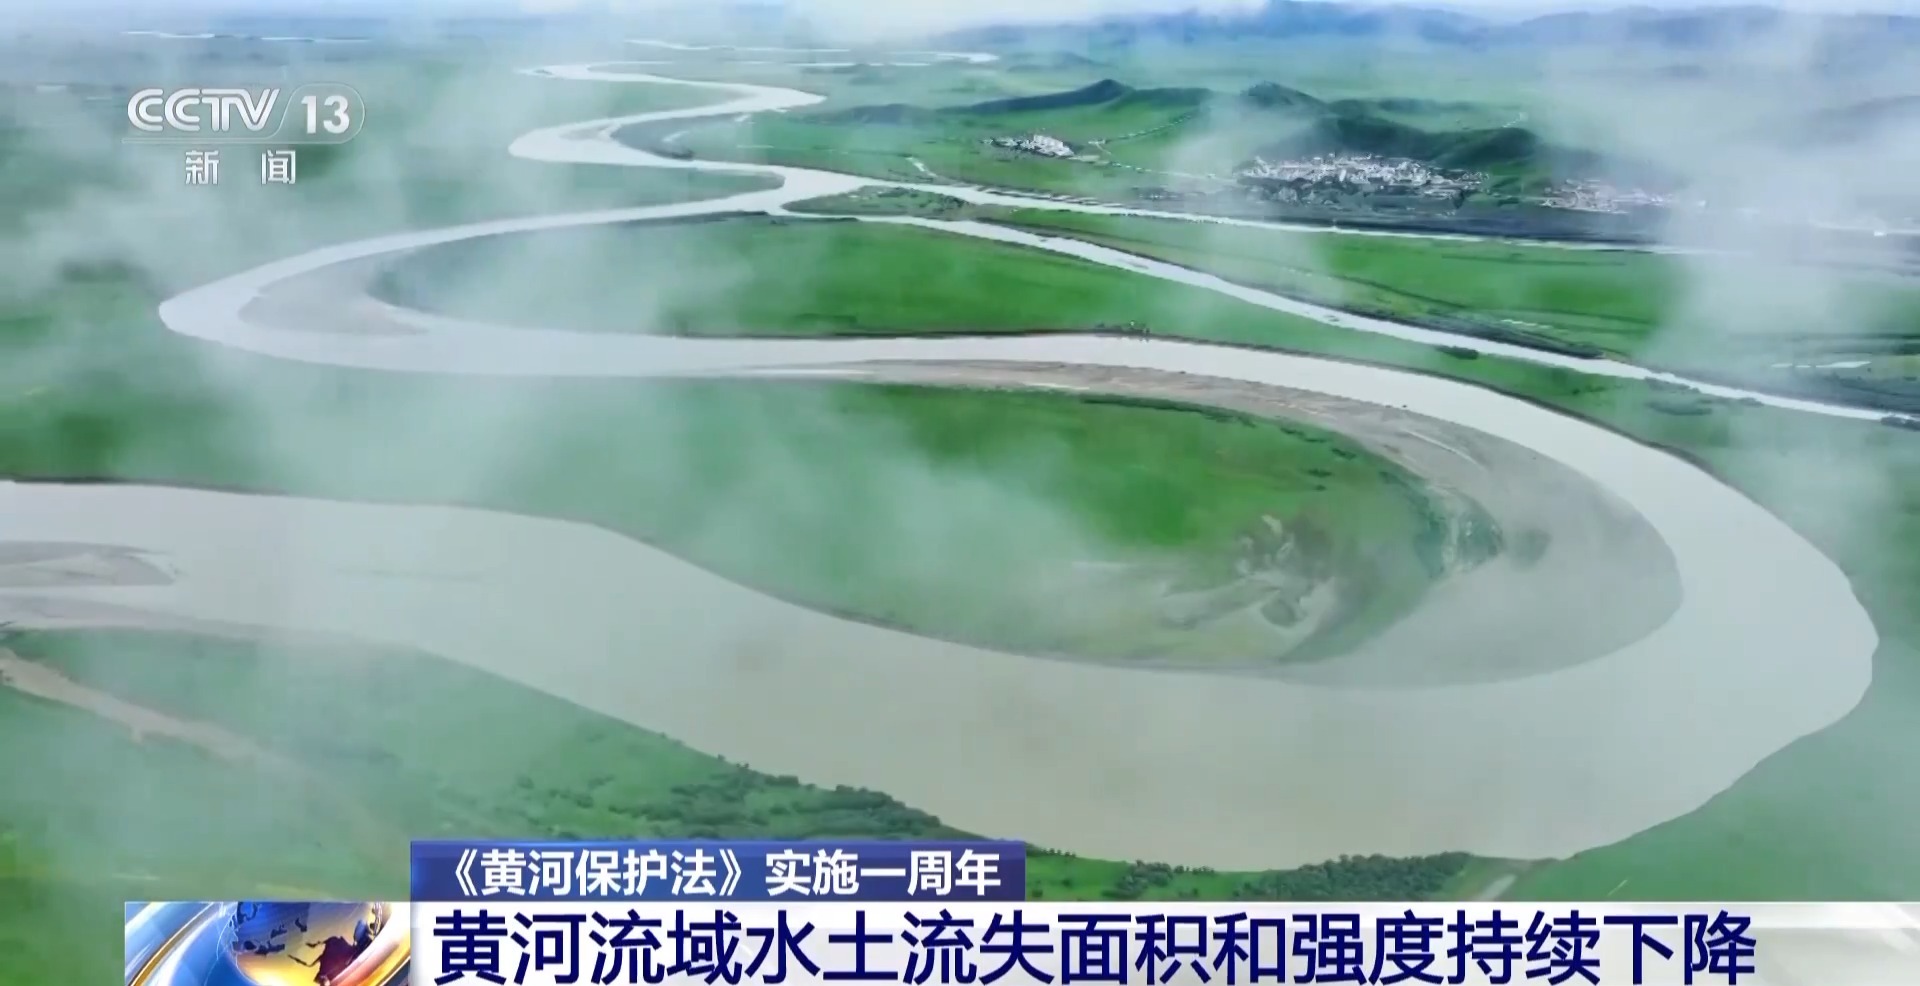 《黄河扞卫法》实践一周年 黄河流域水土流失面积和强度一连降低